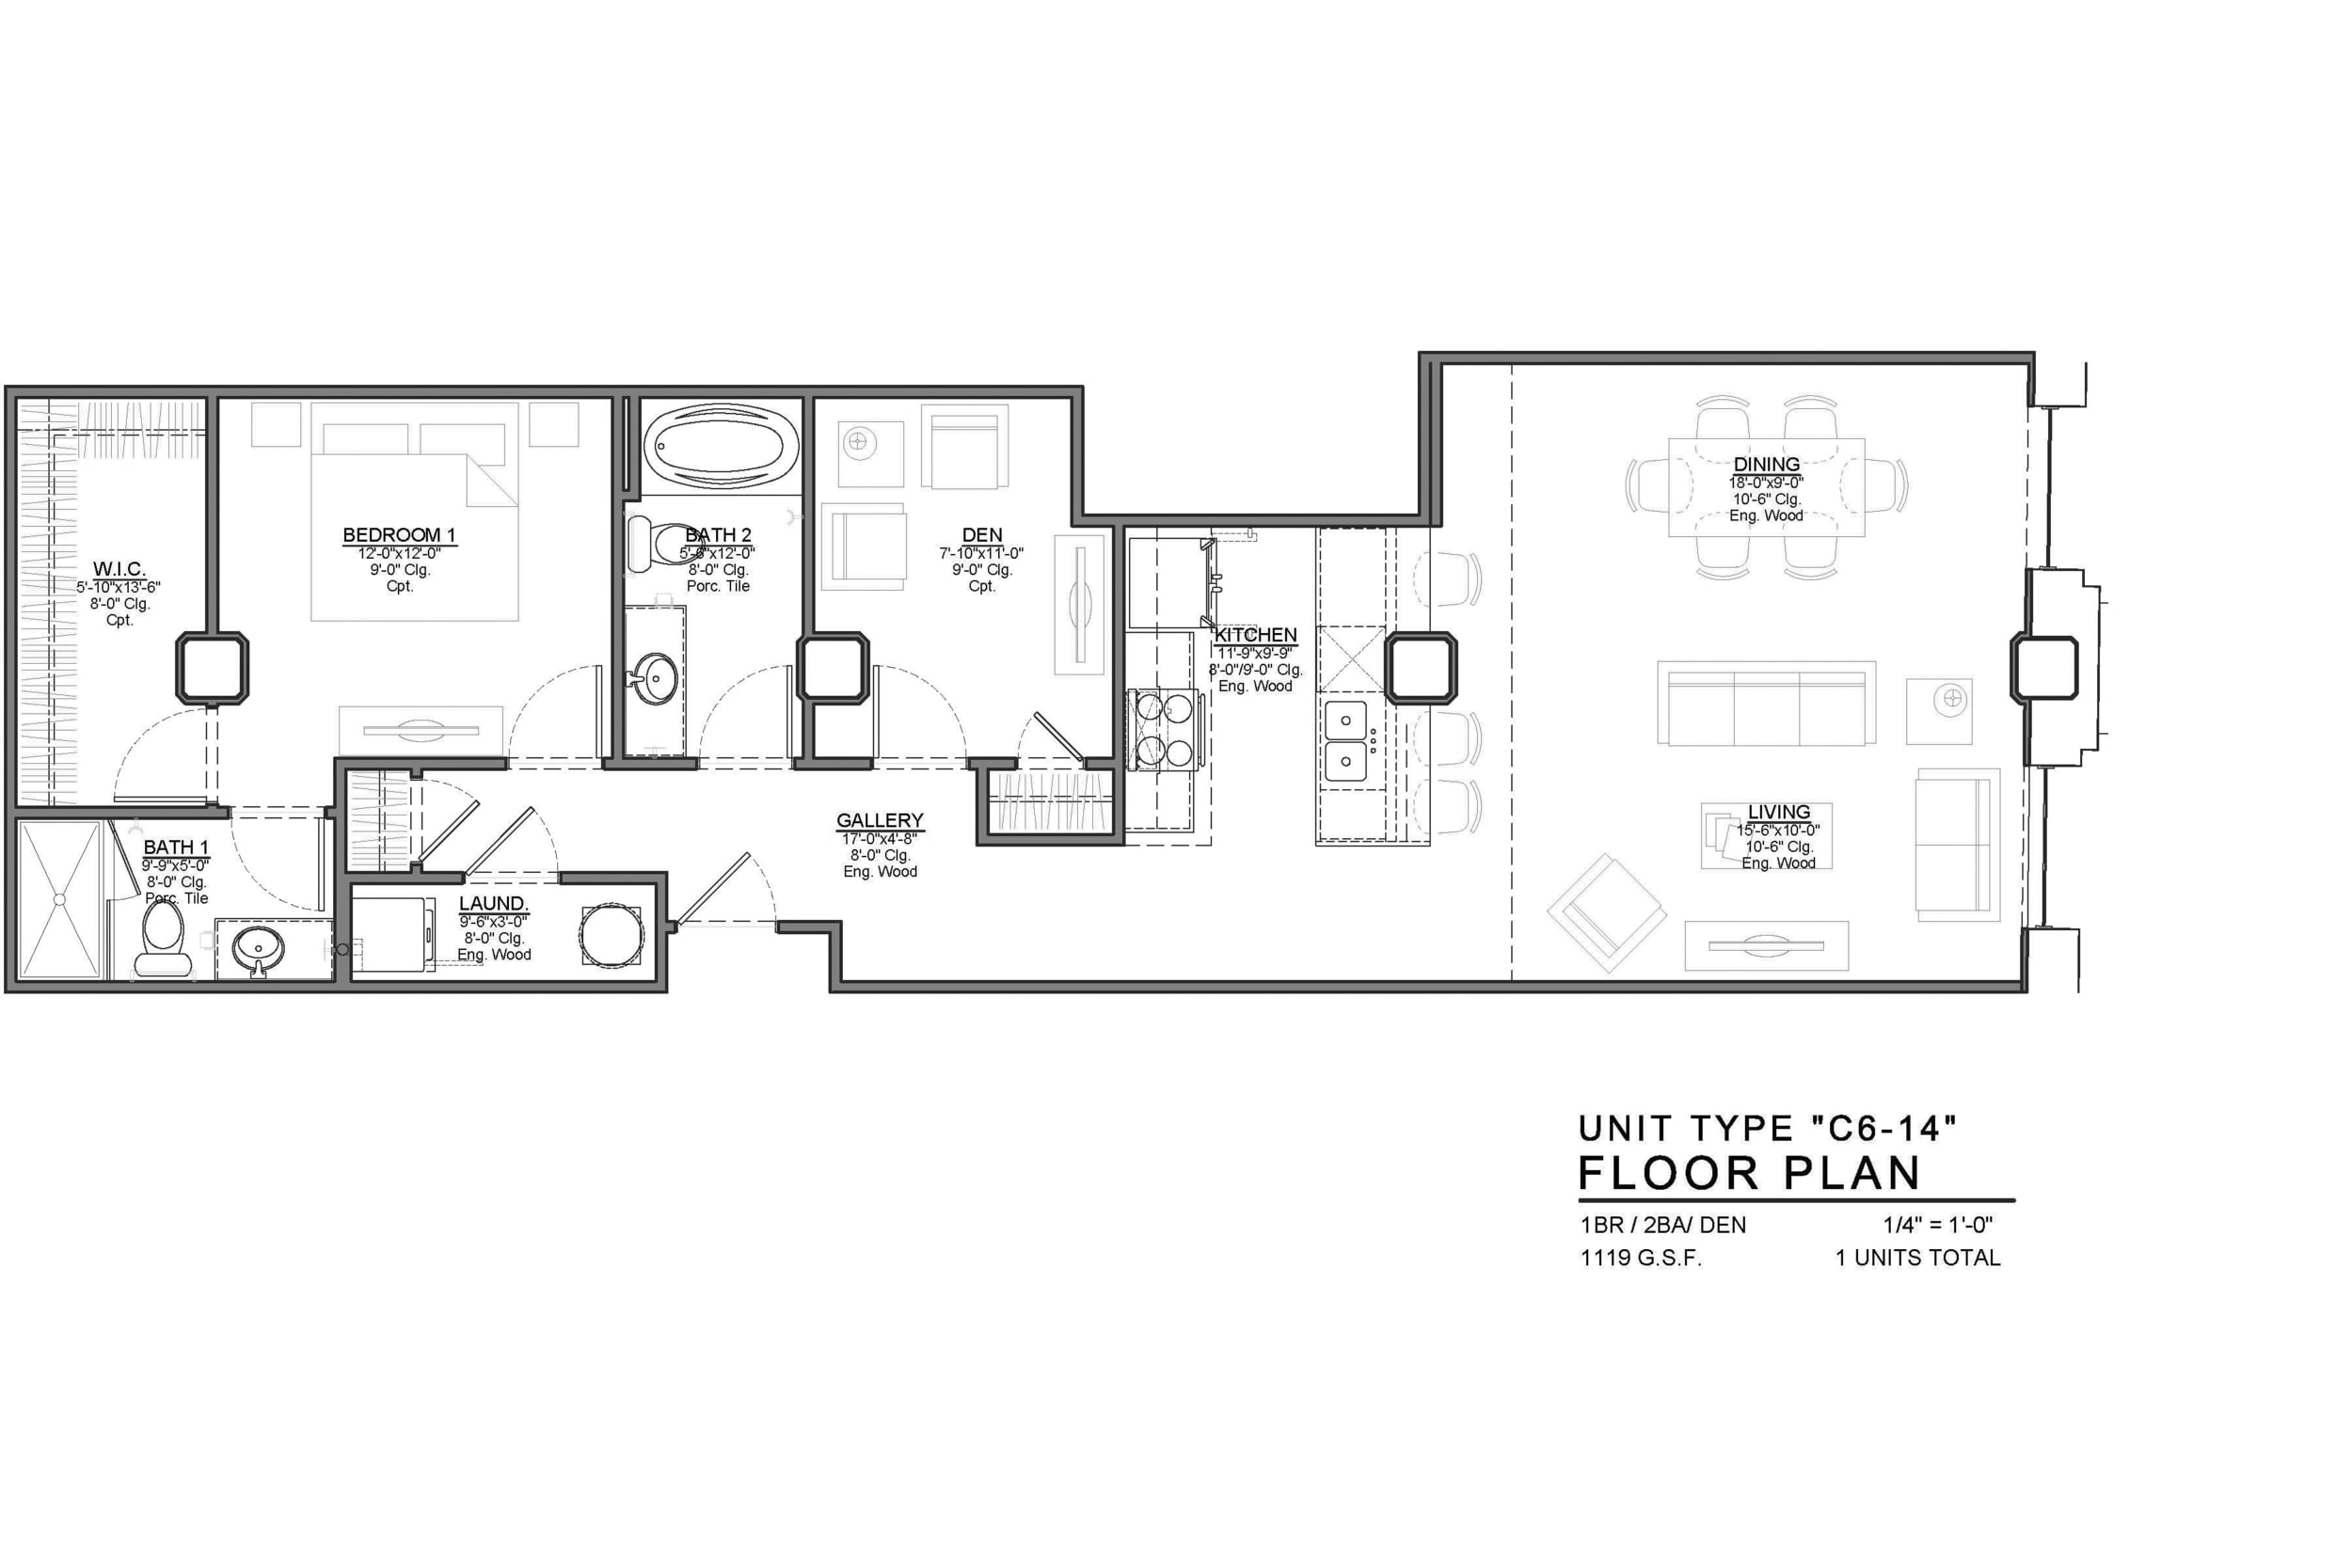 C6-14 FLOOR PLAN: 1 BEDROOM / 2 BATH / DEN